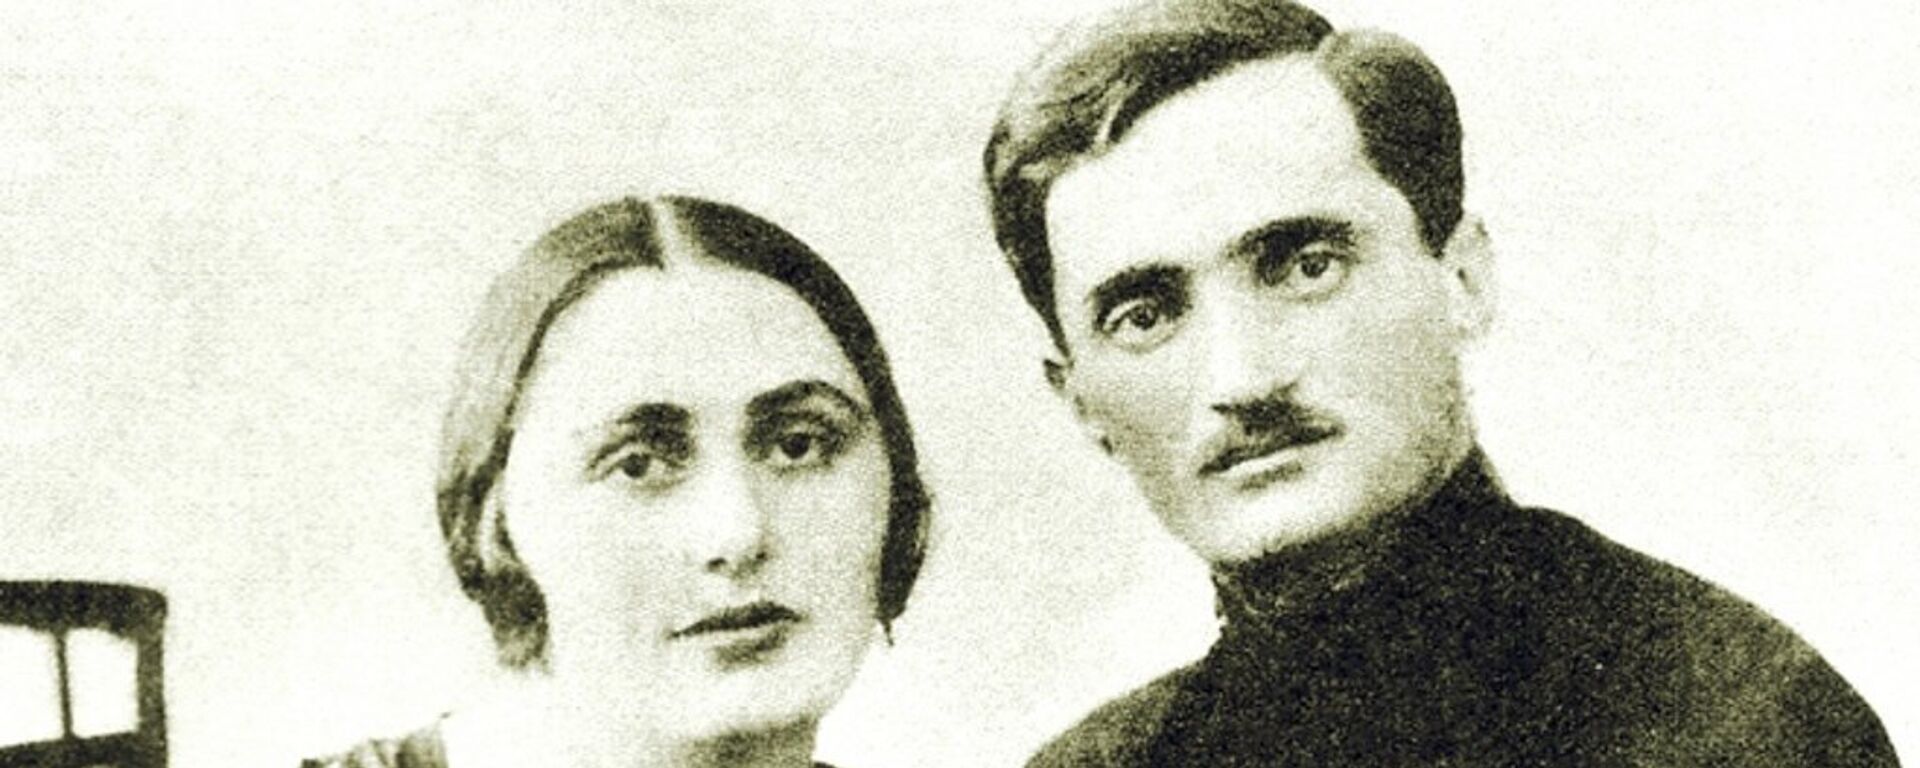 С любимой женой Сарией - Sputnik Абхазия, 1920, 01.05.2016